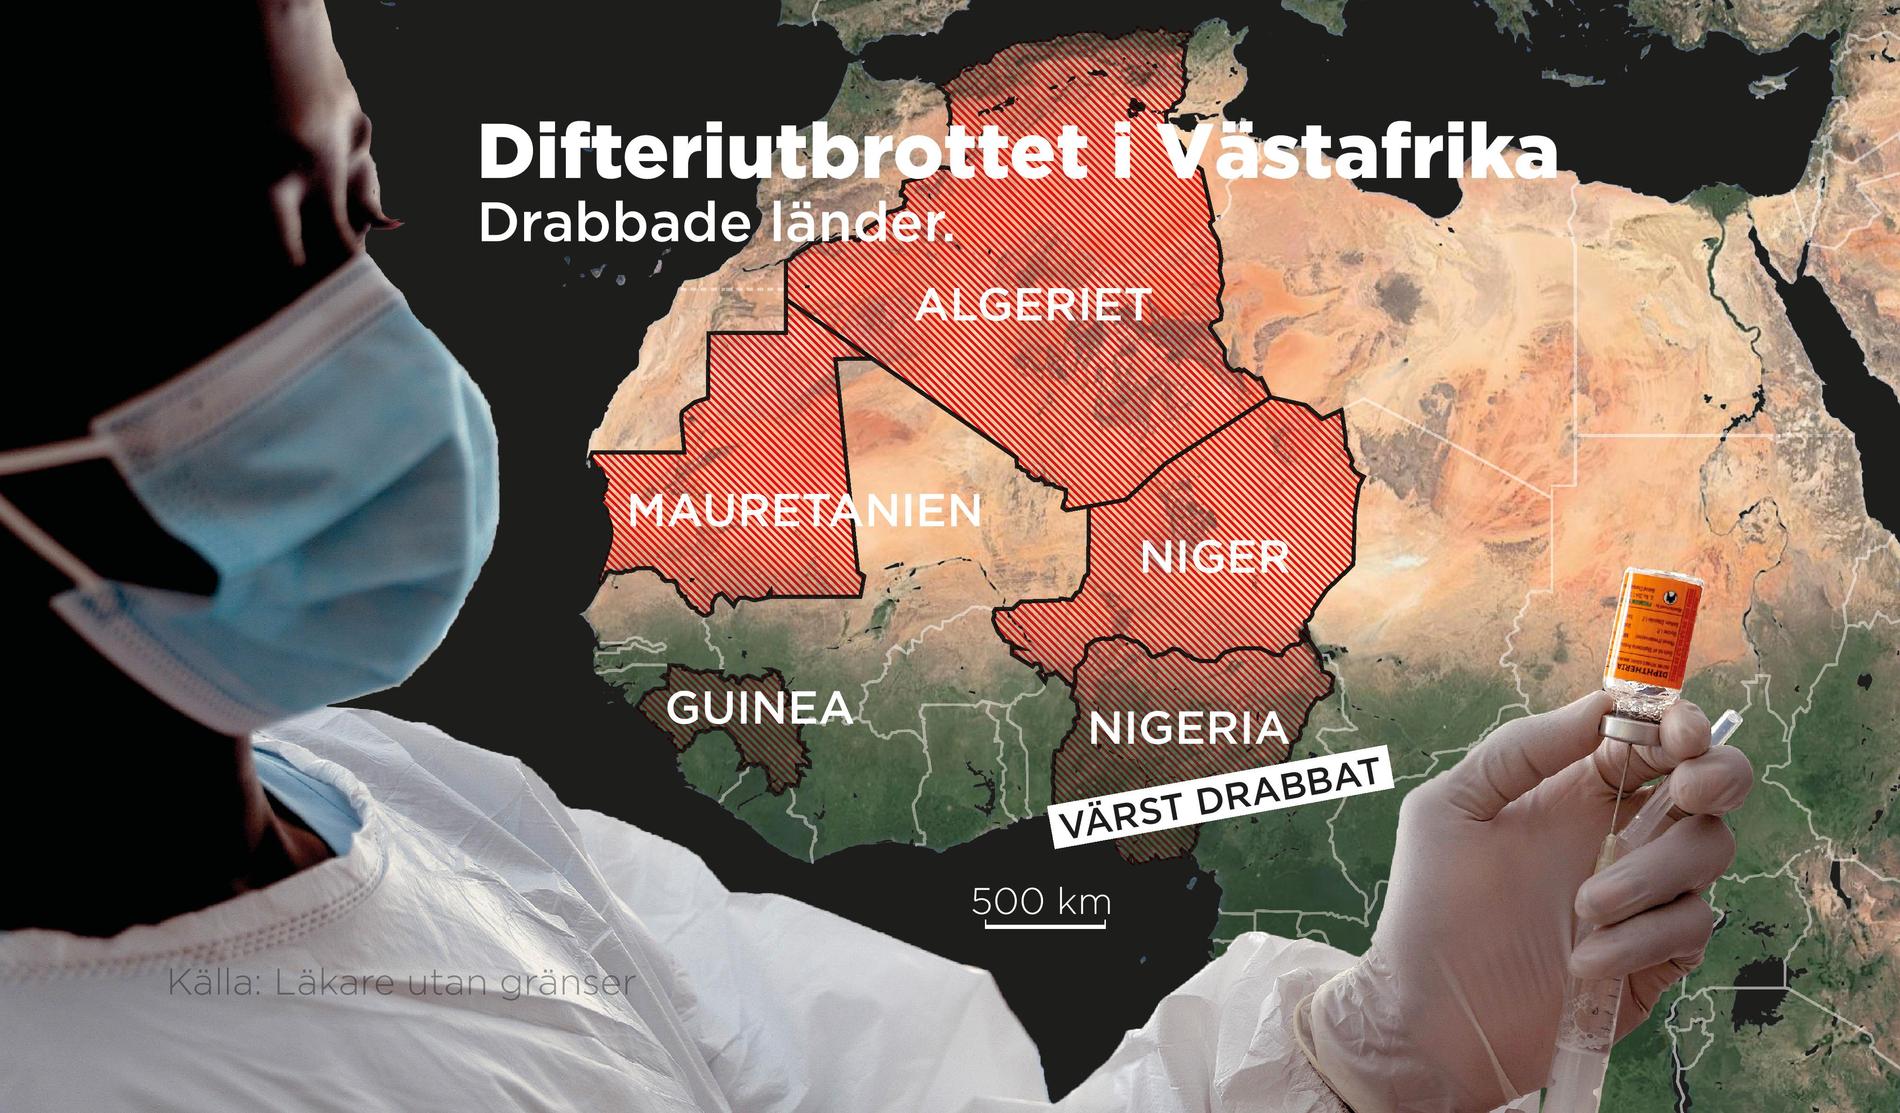 Nigeria är det land som hittills drabbats värst av difteriutbrottet.